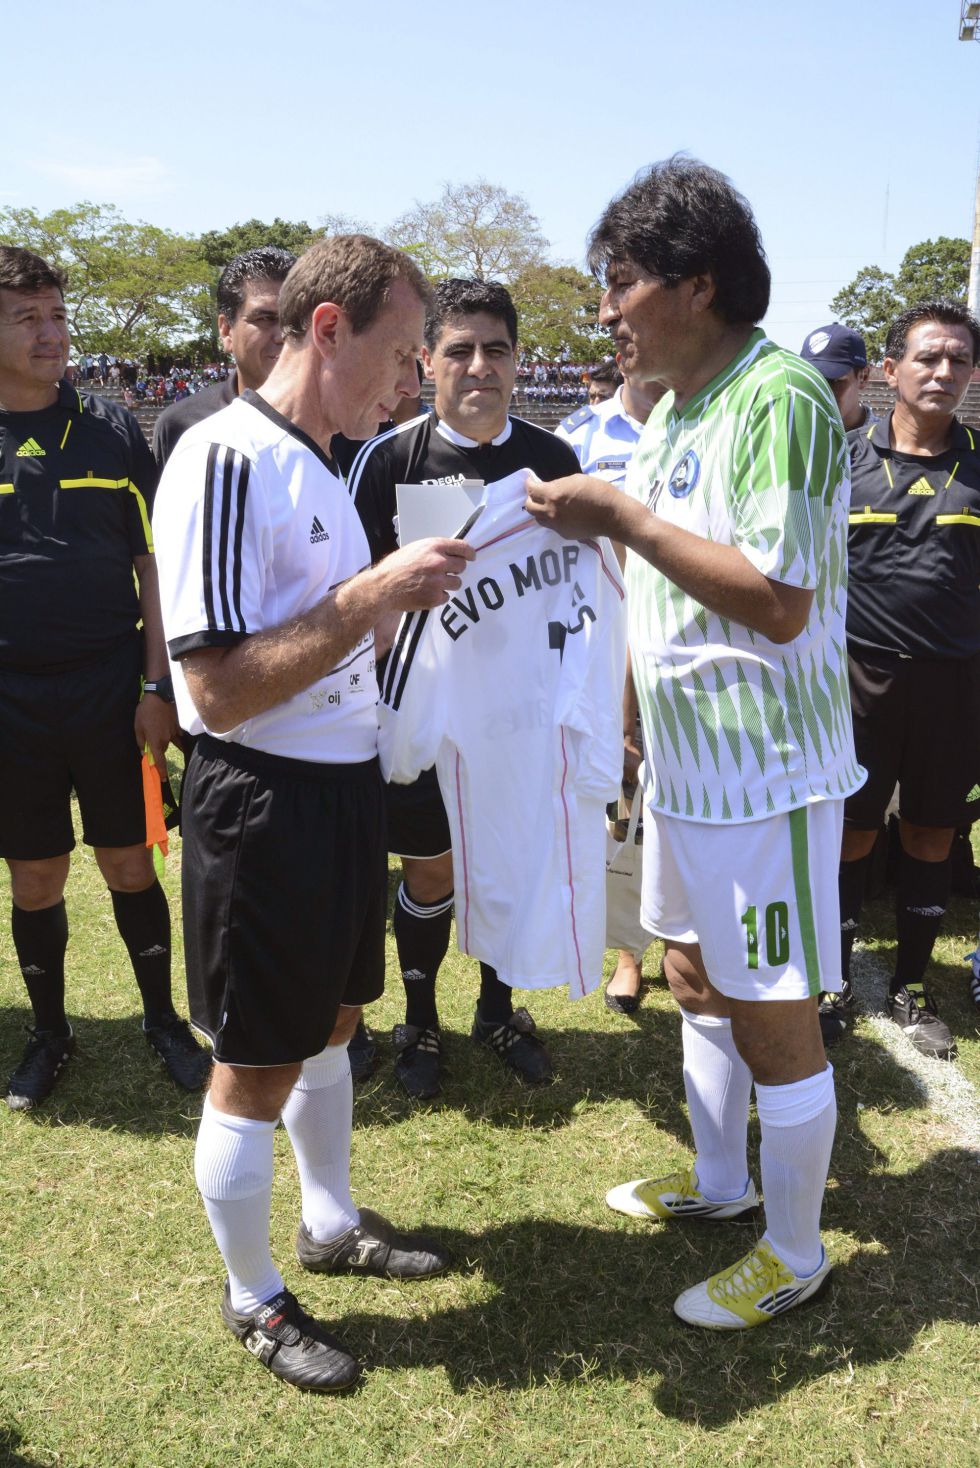 ¿Cuánto mide Evo Morales? - Altura - Real height 1412795611_589547_1412795728_noticia_grande